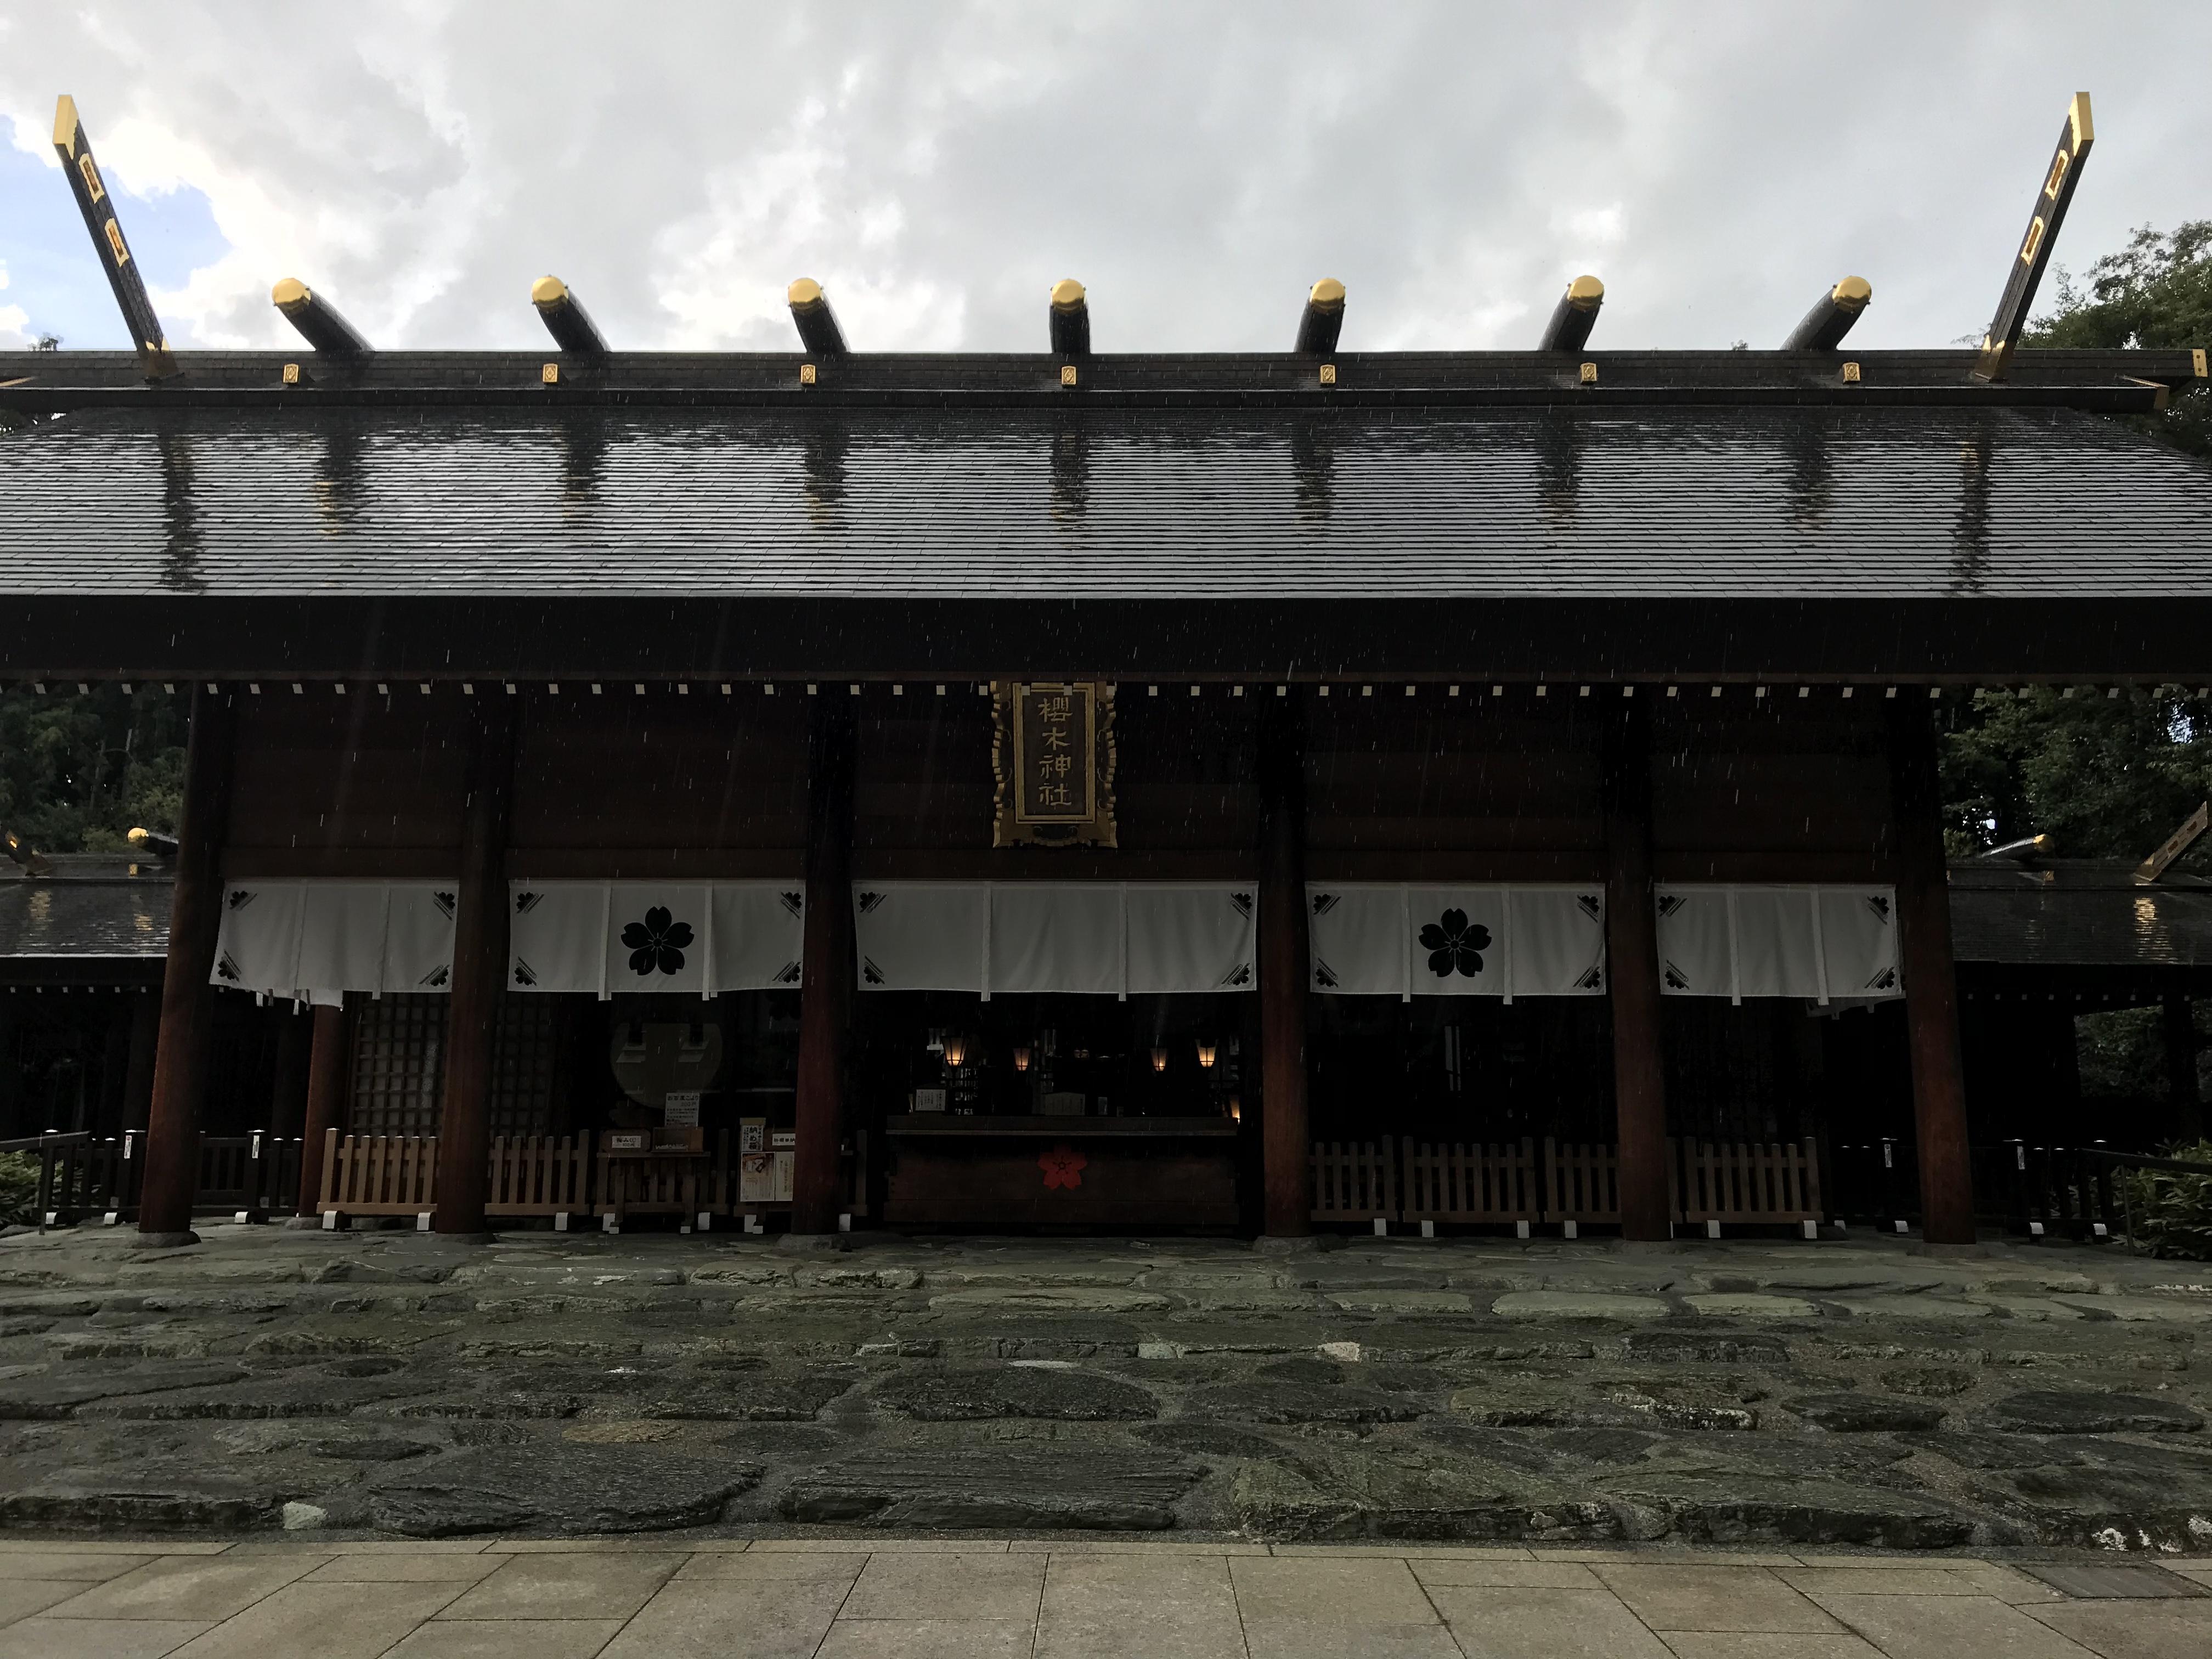 櫻木神社(千葉県野田市駅)の投稿(1回目)。華やかな神社でした。夕方にお参りさせていただきま…[ホトカミ]